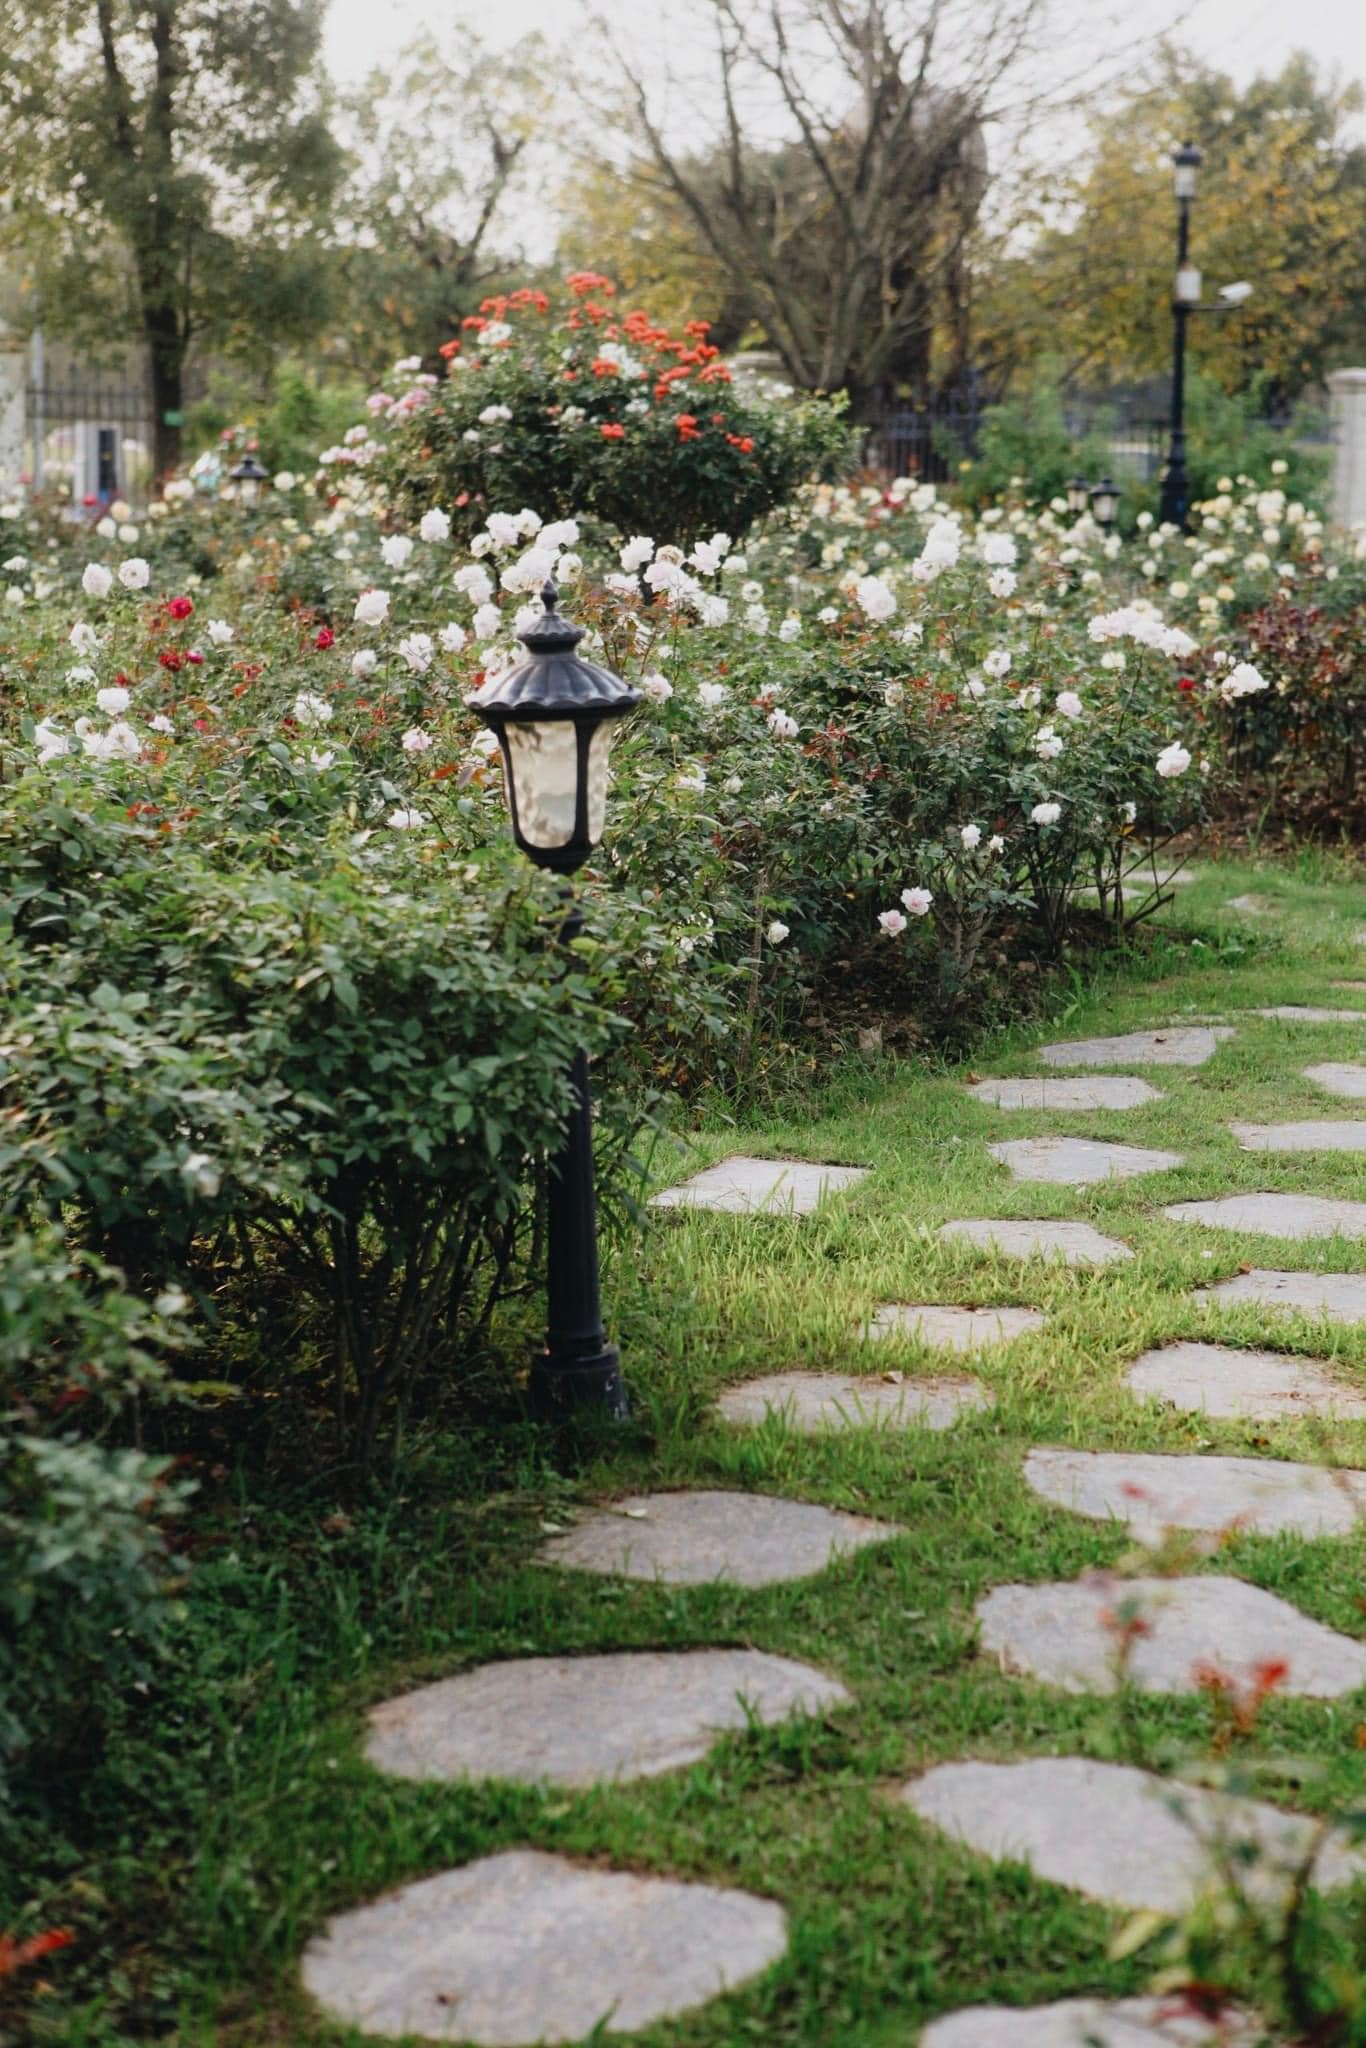 Trường đại học gây sốt với vườn hồng hàng trăm loại đẹp như cổ tích: Chỉ ngắm thôi cũng đã đầy cảm hứng học tập- Ảnh 3.